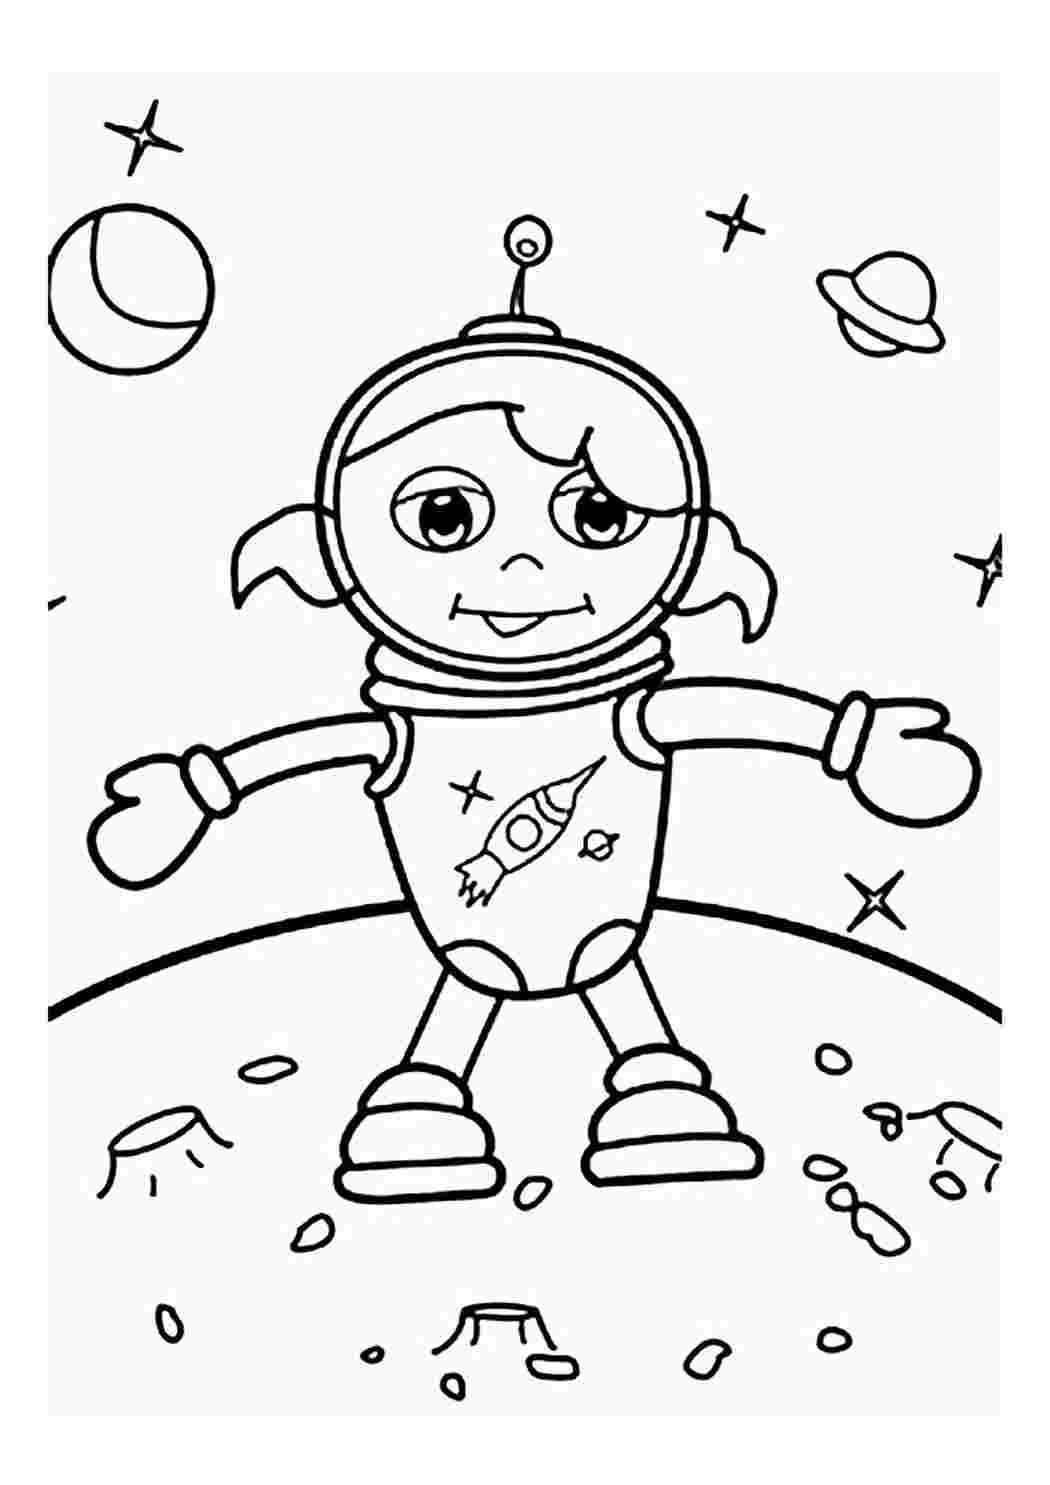 Космонавт раскраска. Космонавт раскраска для детей. Космонавт рисунок раскраска. Космонавт раскраска для детей 4 5 лет